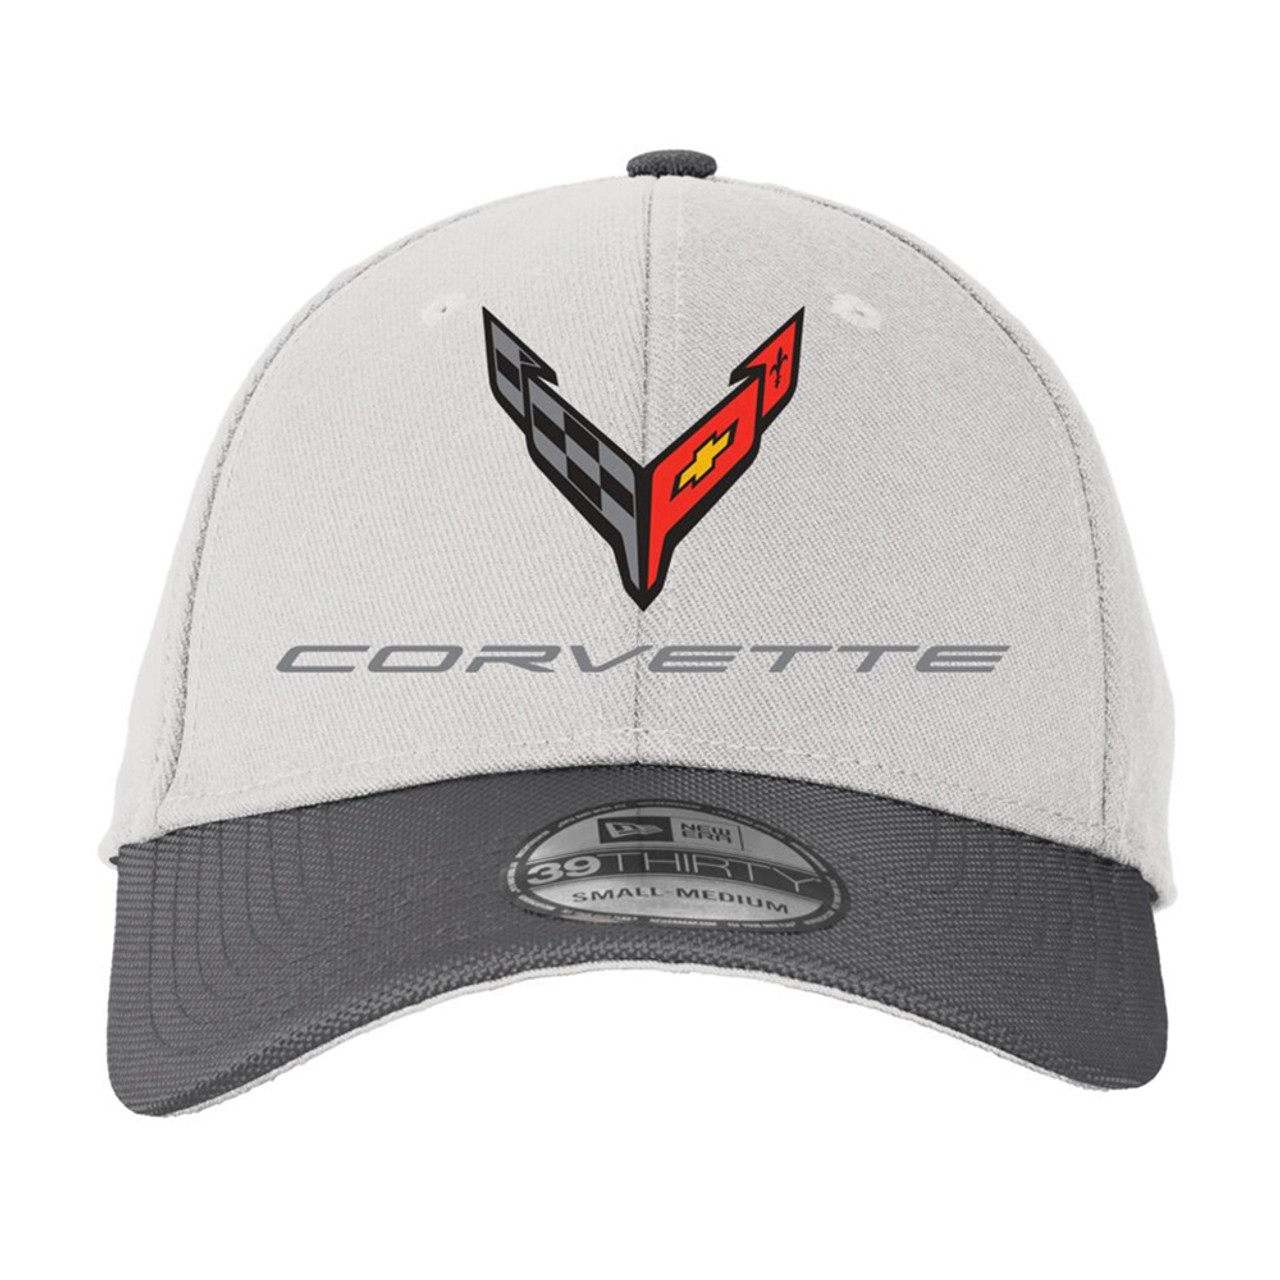 C8 Corvette Flex Fit Performance Hat - Gray